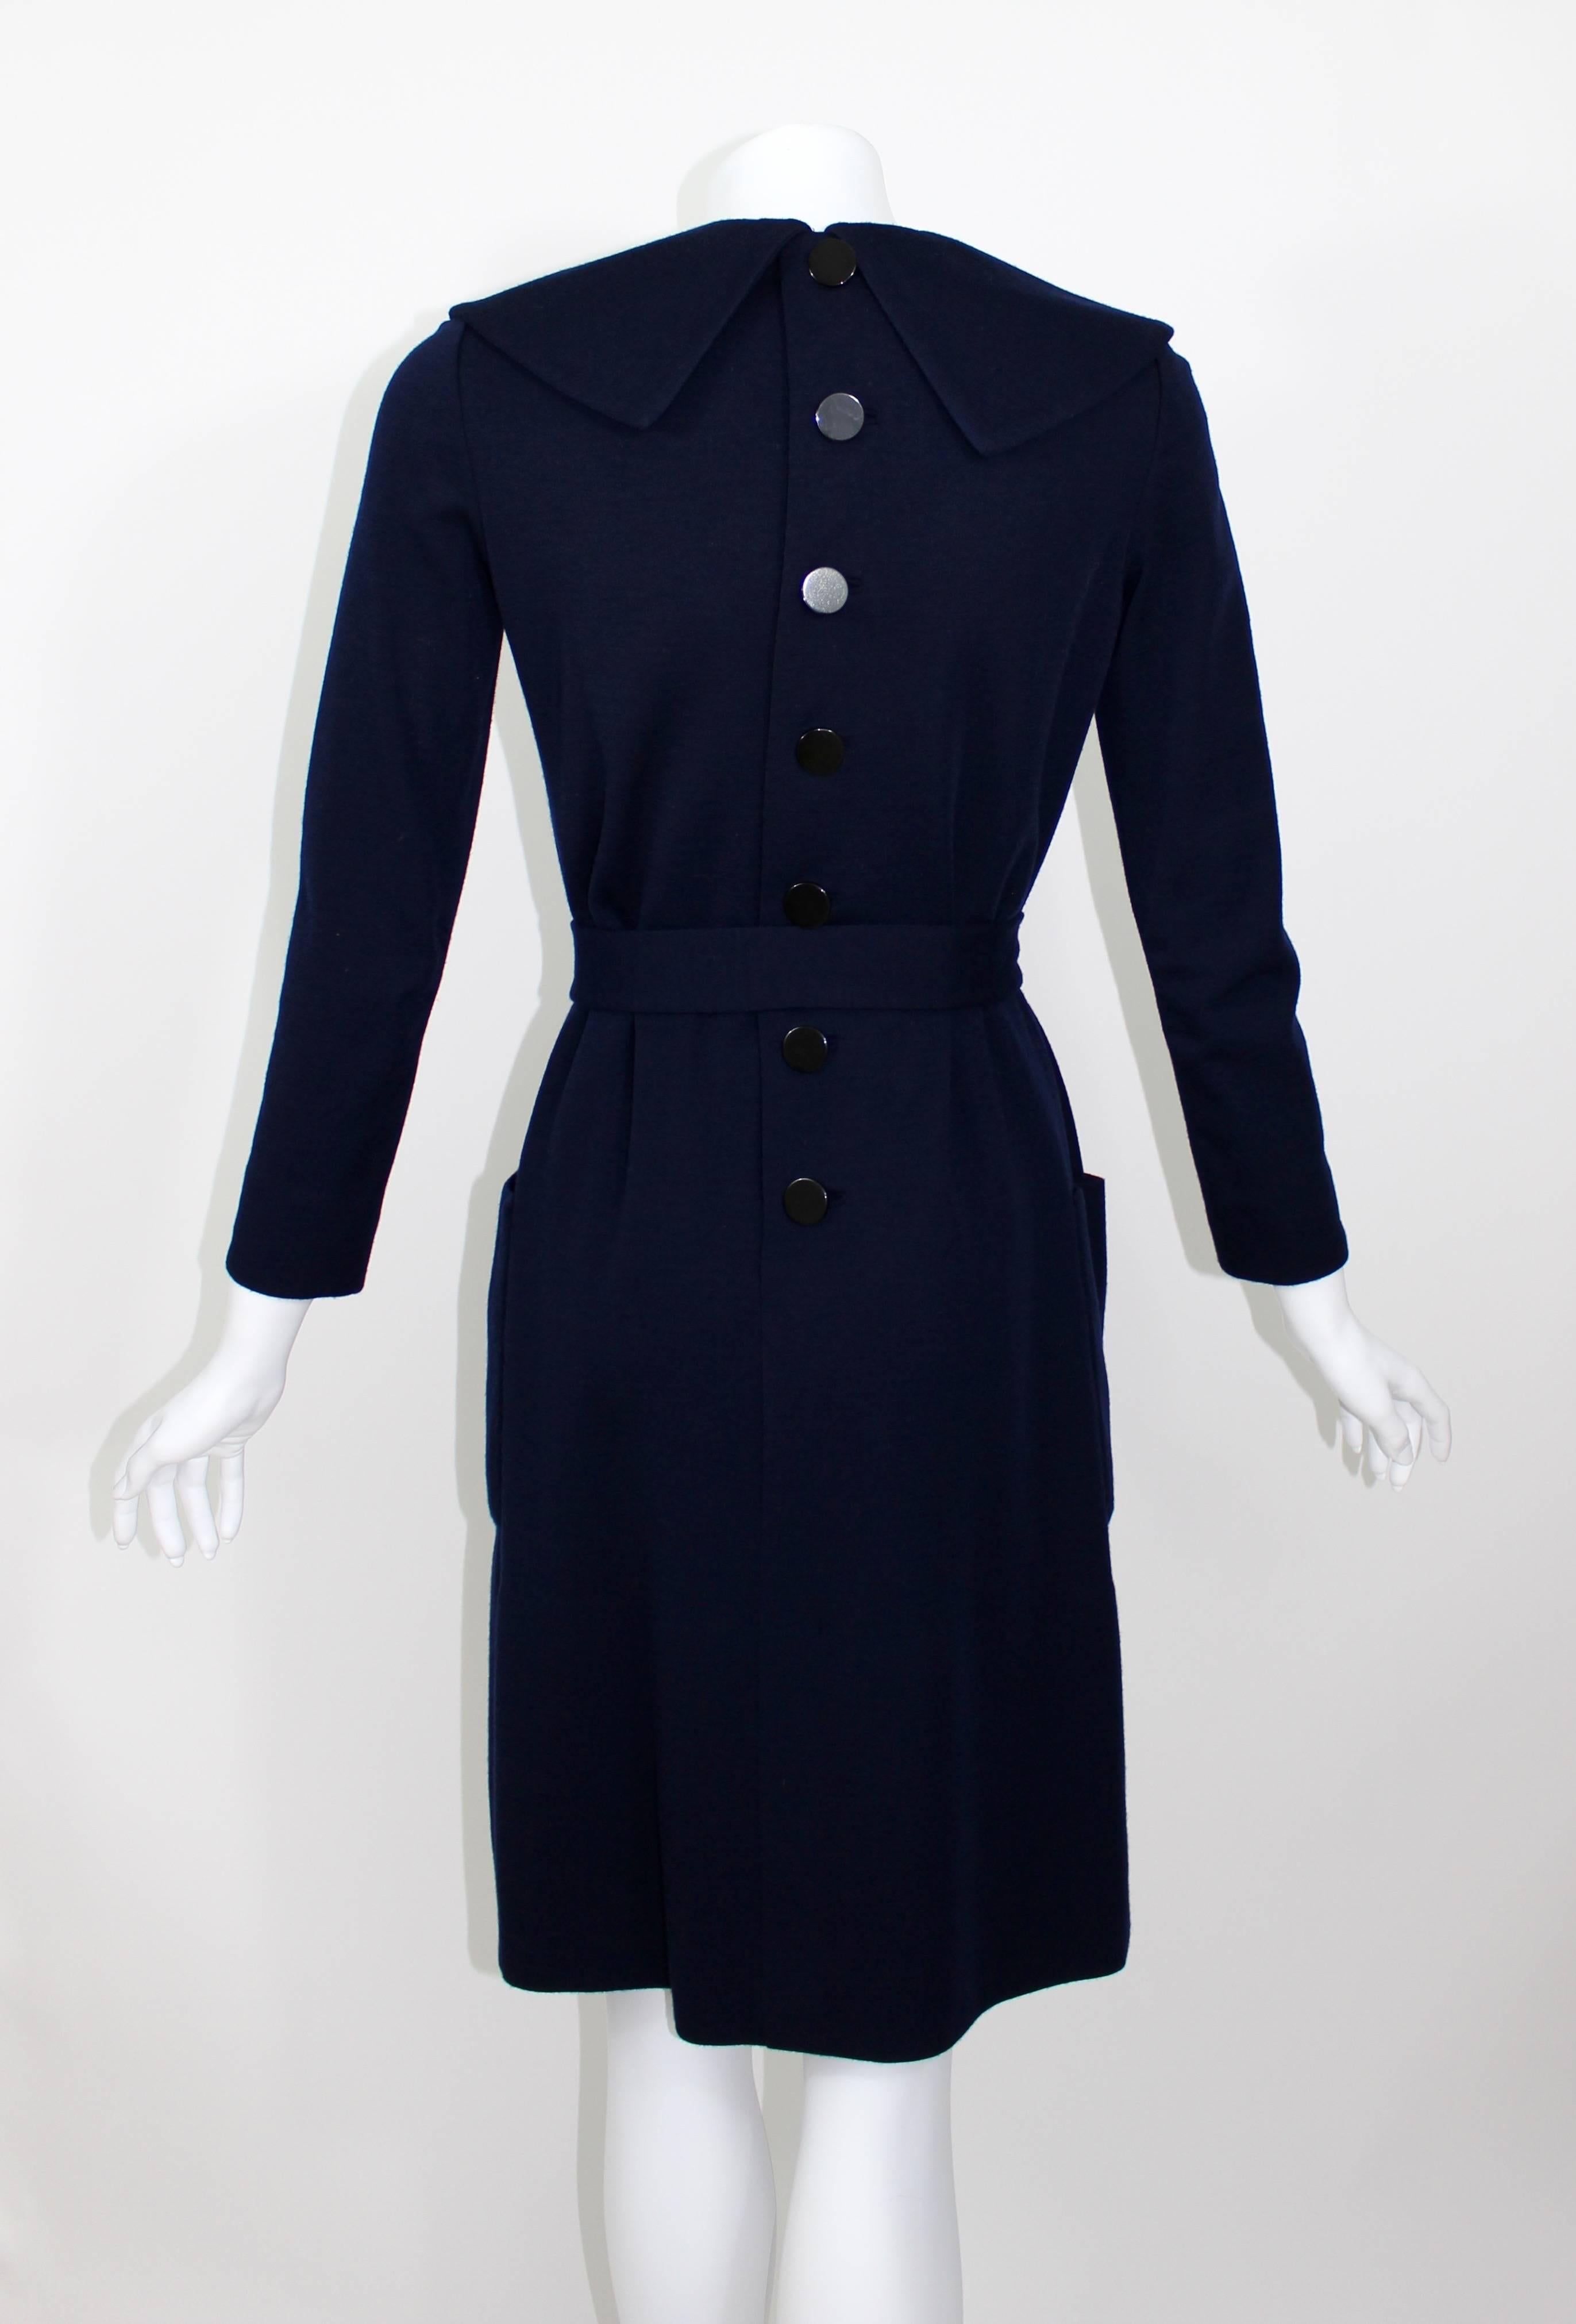 Norman Norell - Robe en jersey de laine bleu nuit des années 1960 Pour femmes en vente